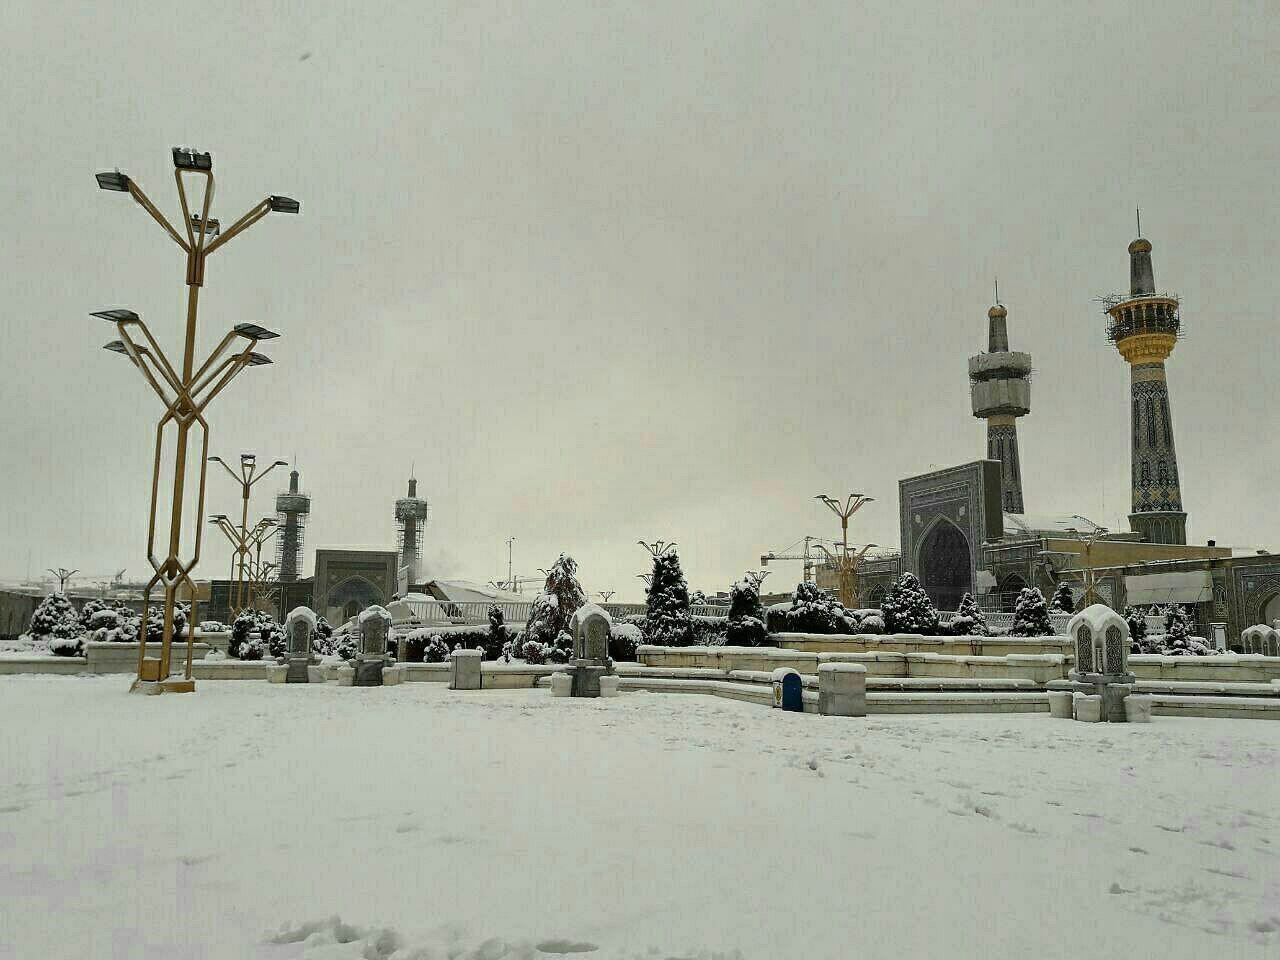 عکس | بارش سنگین برف در مشهد؛ حرم مطهر امام رضا(ع) سفیدپوش شد